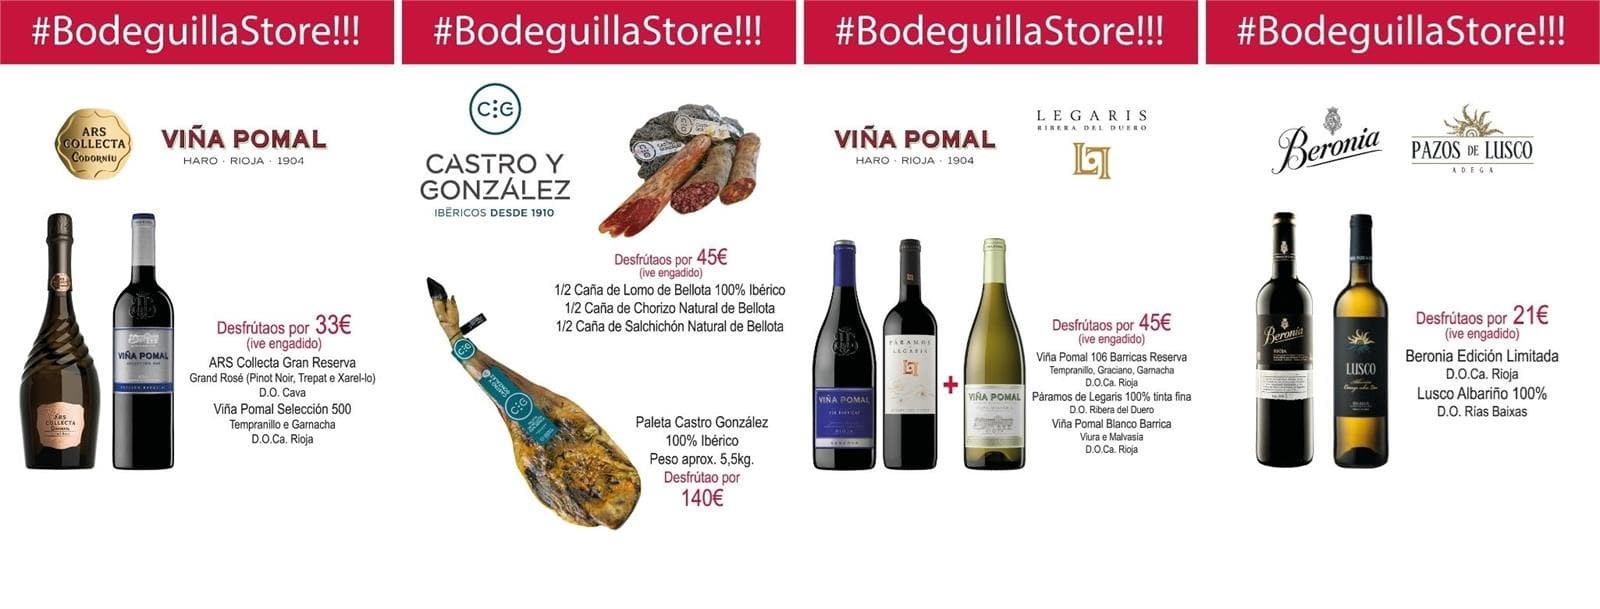 Bodeguilla Store para levar: ibéricos e viños de toda España - Imagen 3